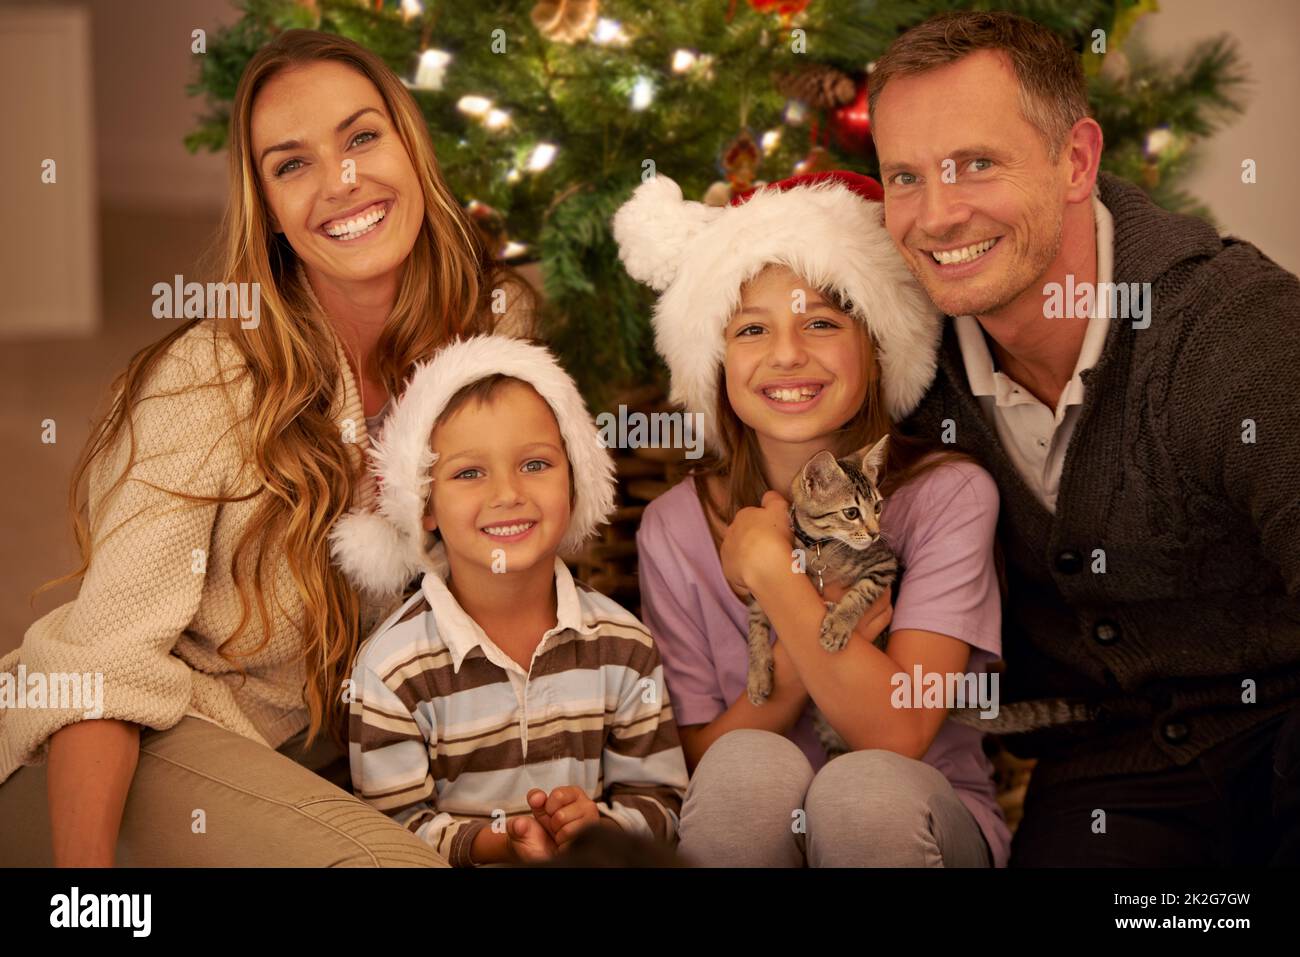 Es una Navidad familiar. Retrato de una joven familia feliz el día de Navidad. Foto de stock